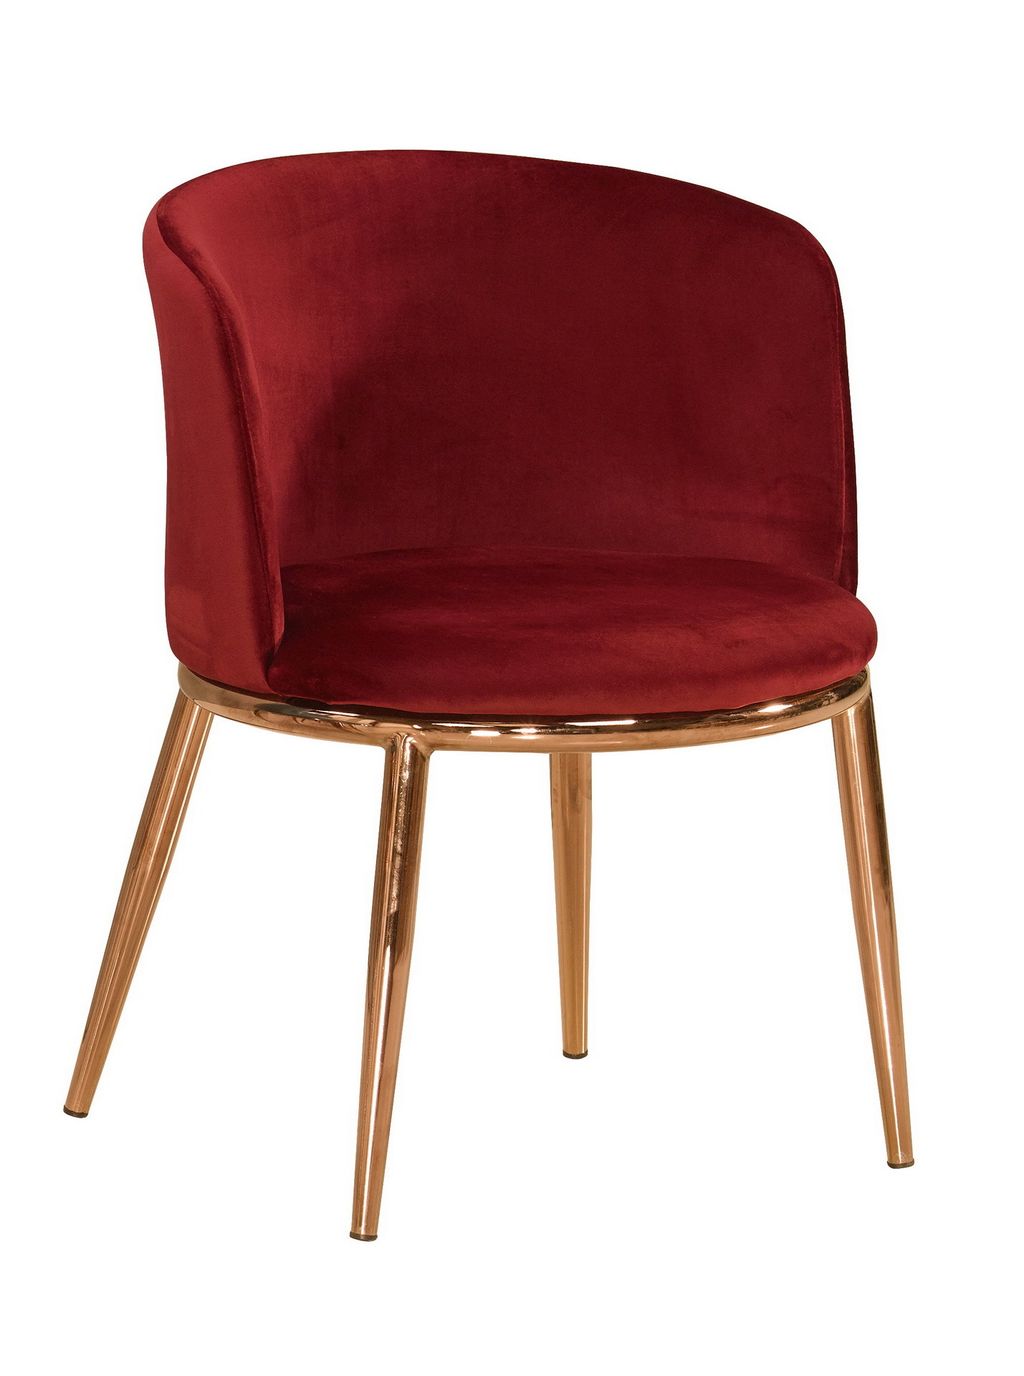 530-6 羅蘭餐椅(紅色布)(五金腳).jpg